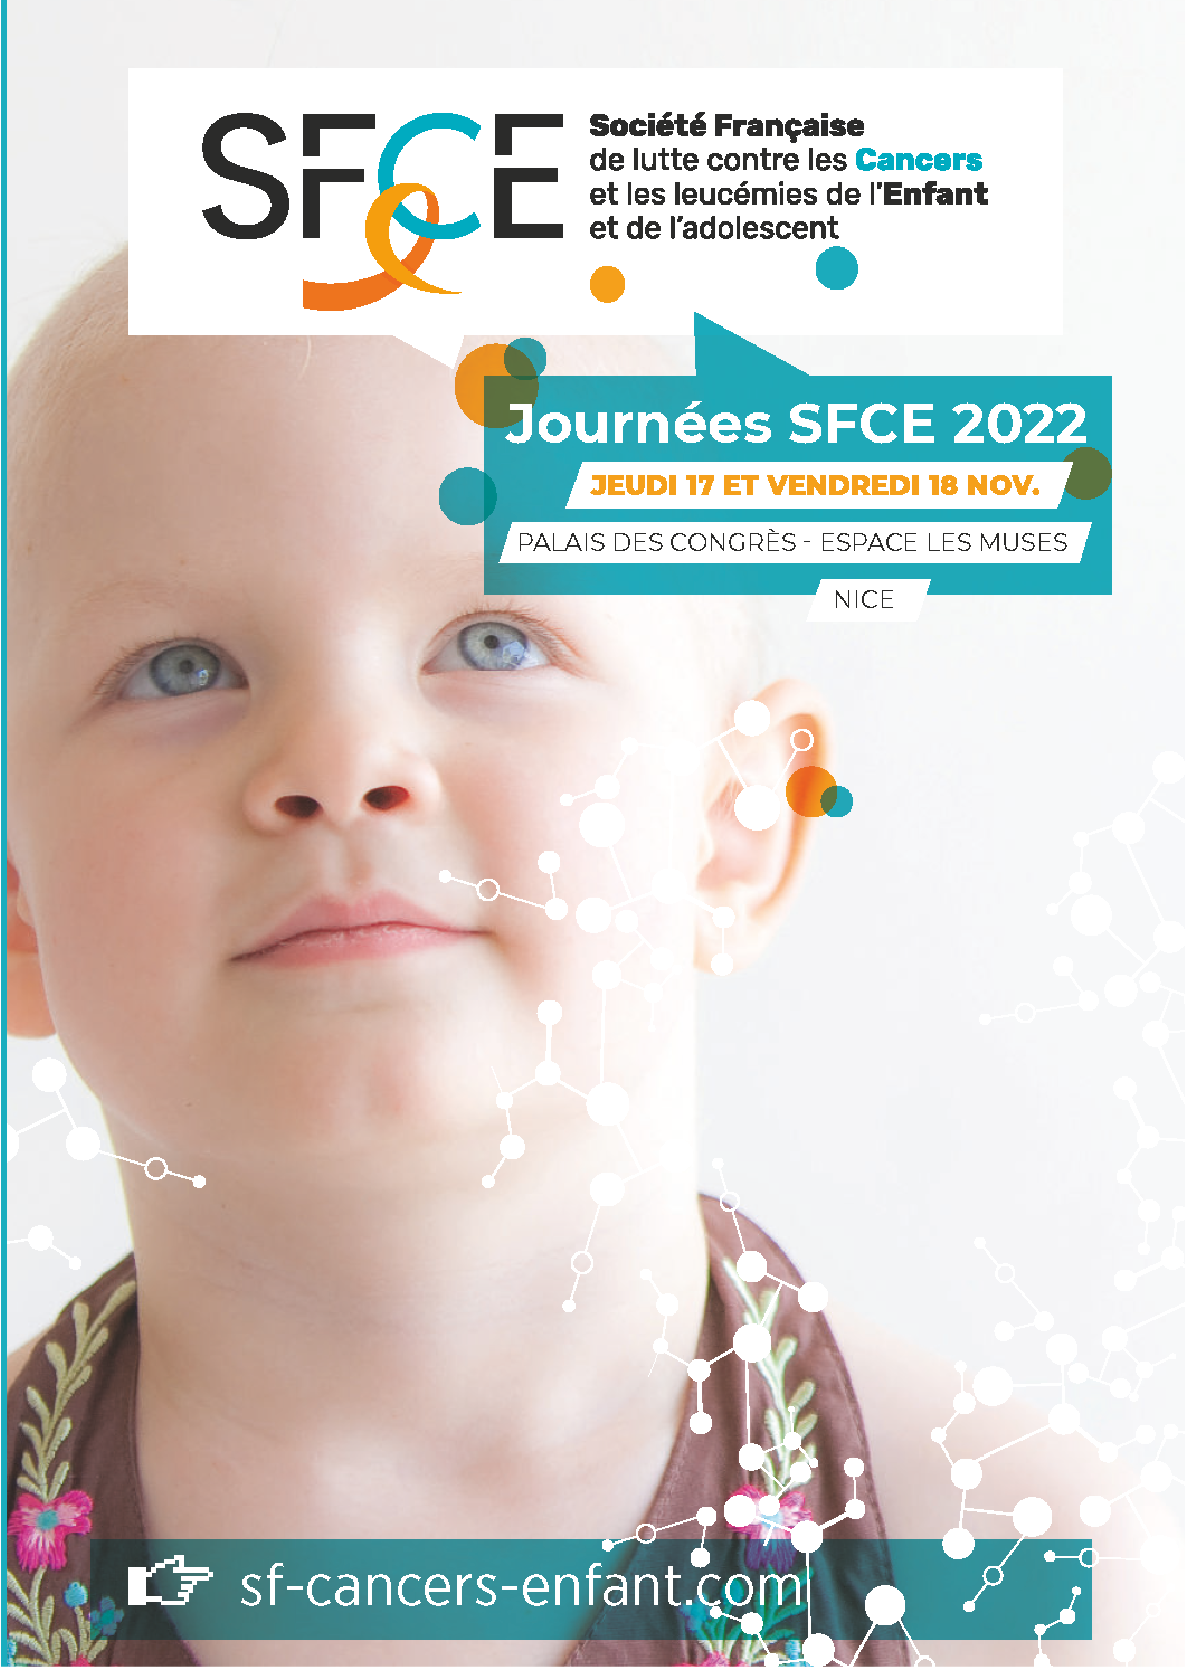 Journées de la Société Française de lutte contre les Cancers et les leucémies de l’Enfant et de l’adolescent - SFCE 2022